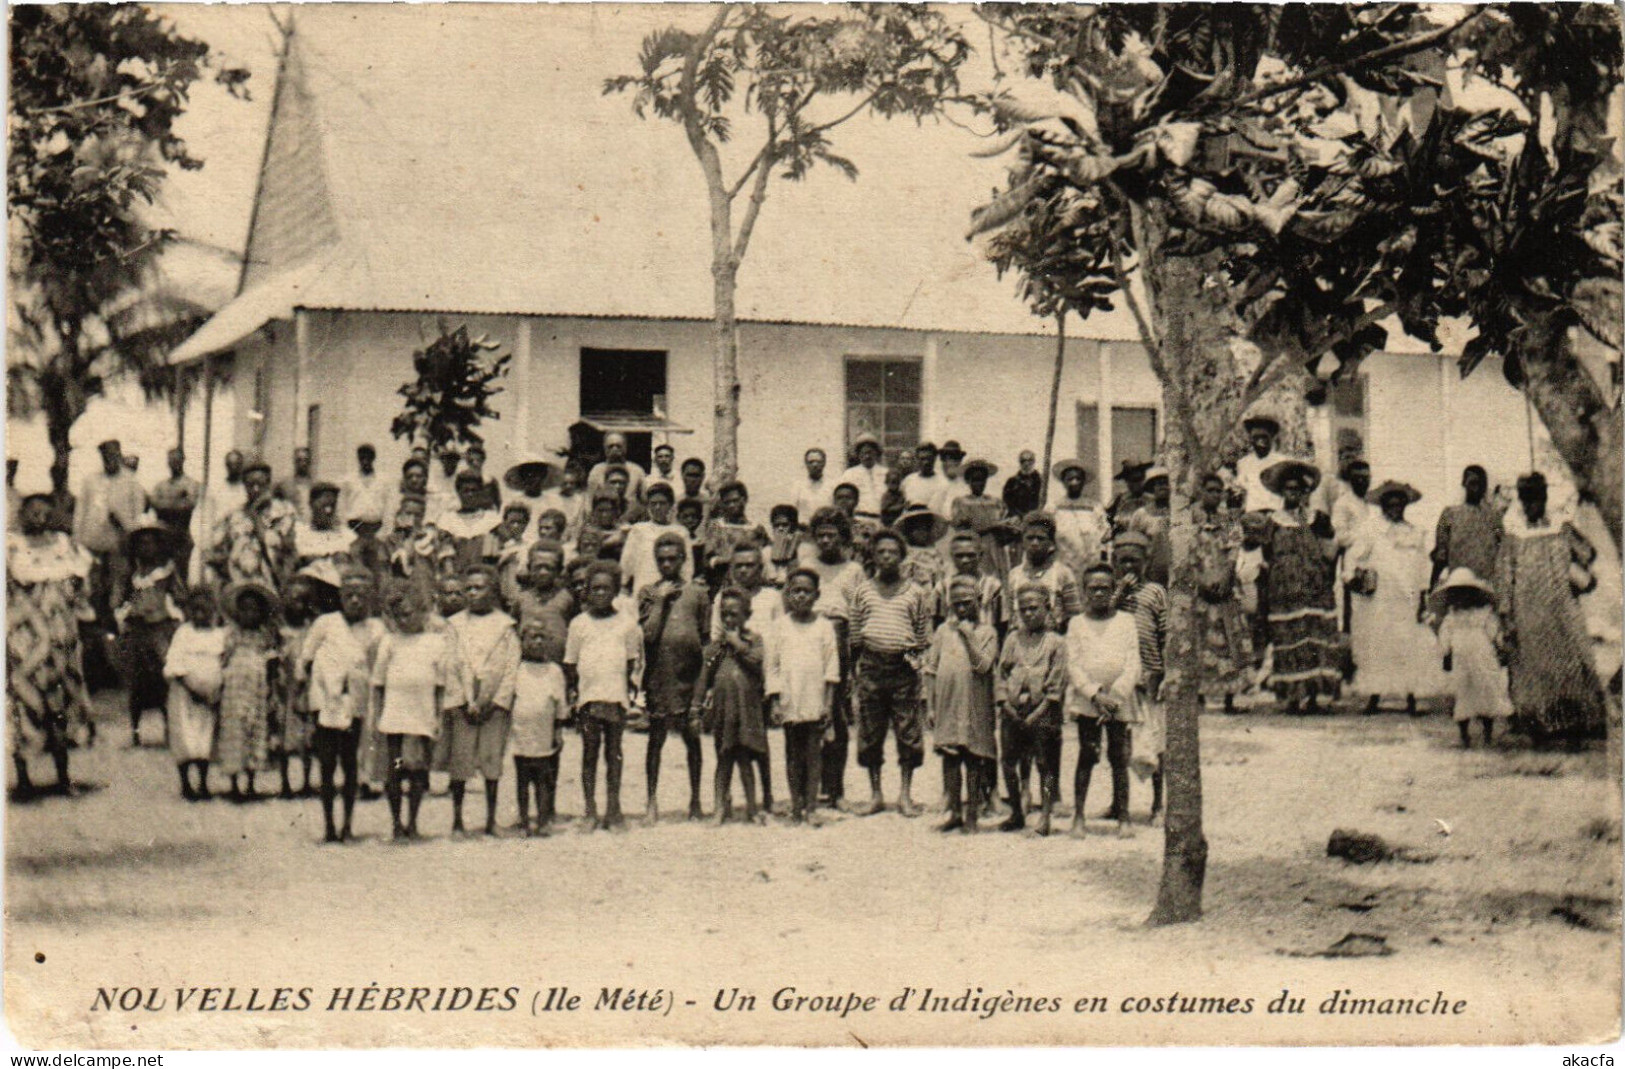 PC NEW HEBRIDES, UN GROUPE D'INDIGÉNES, Vintage Postcard (b53513) - Vanuatu